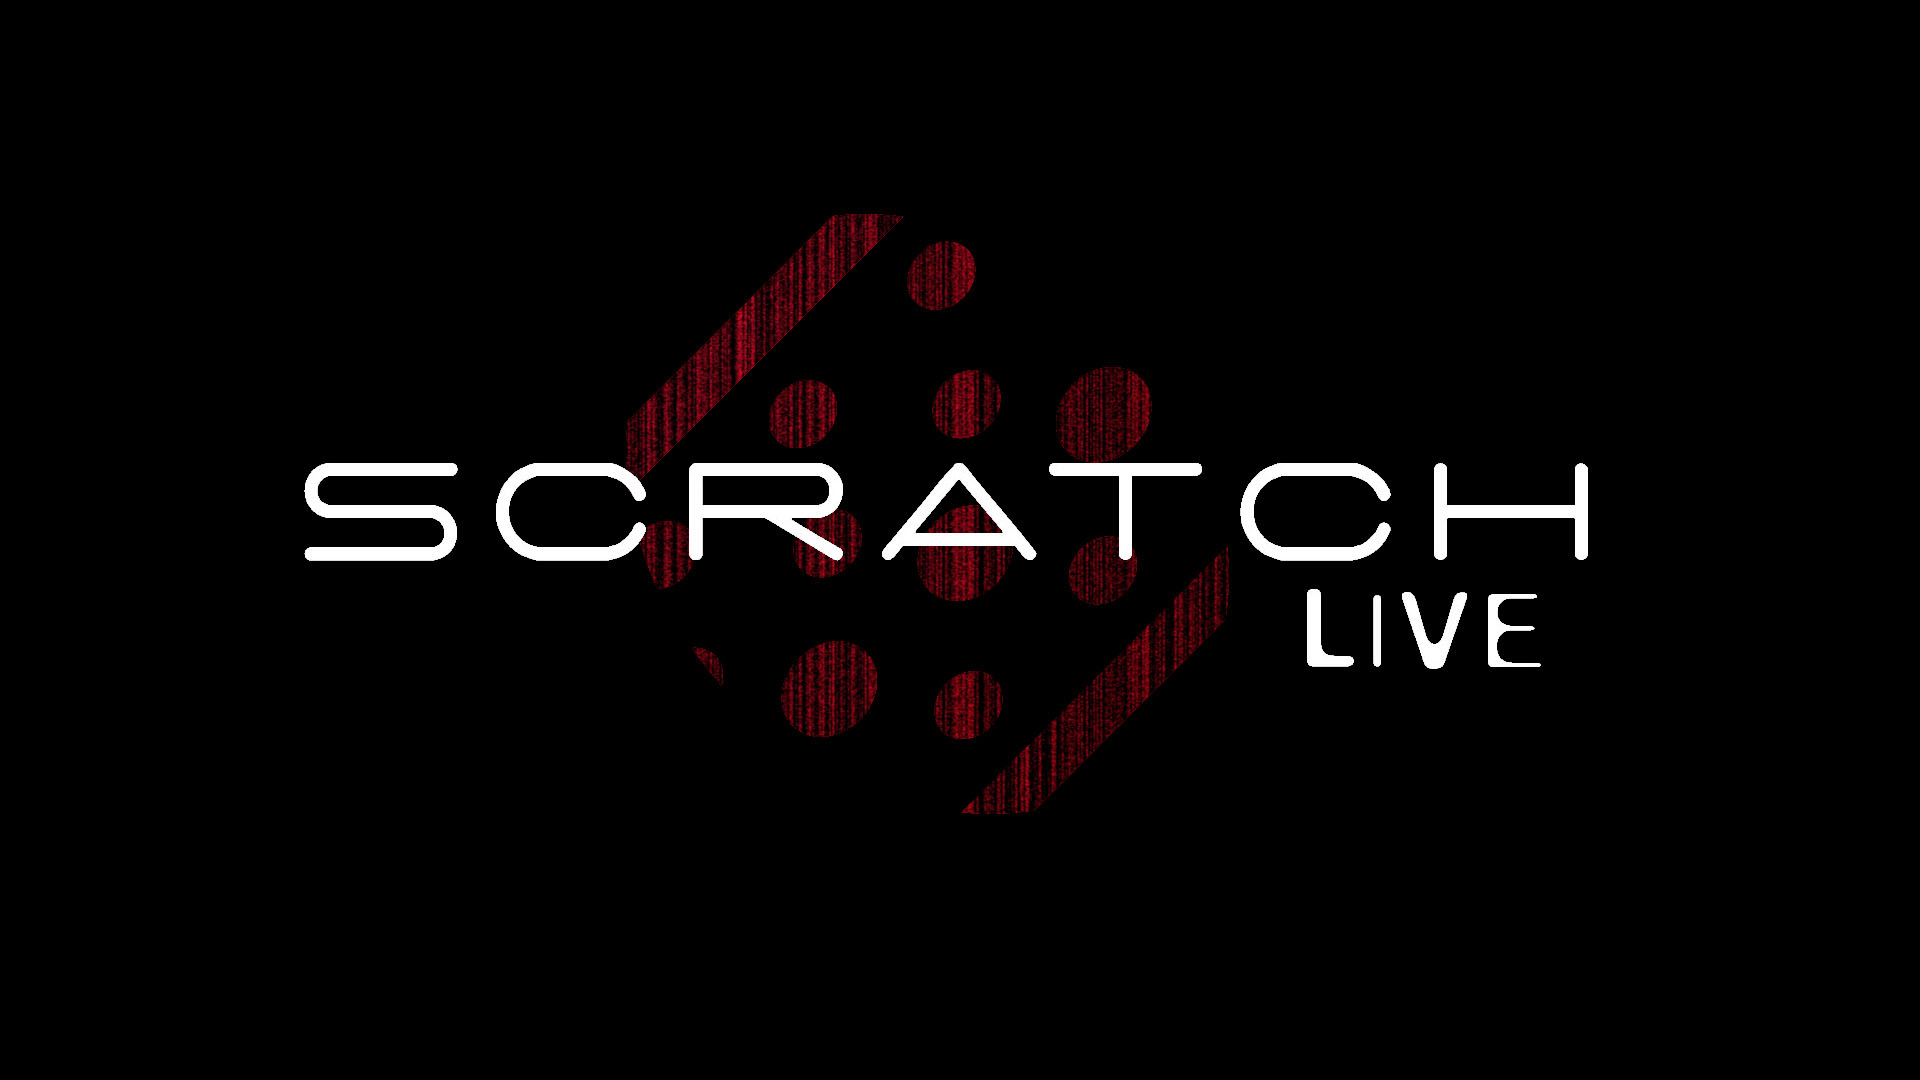 serato scratch live